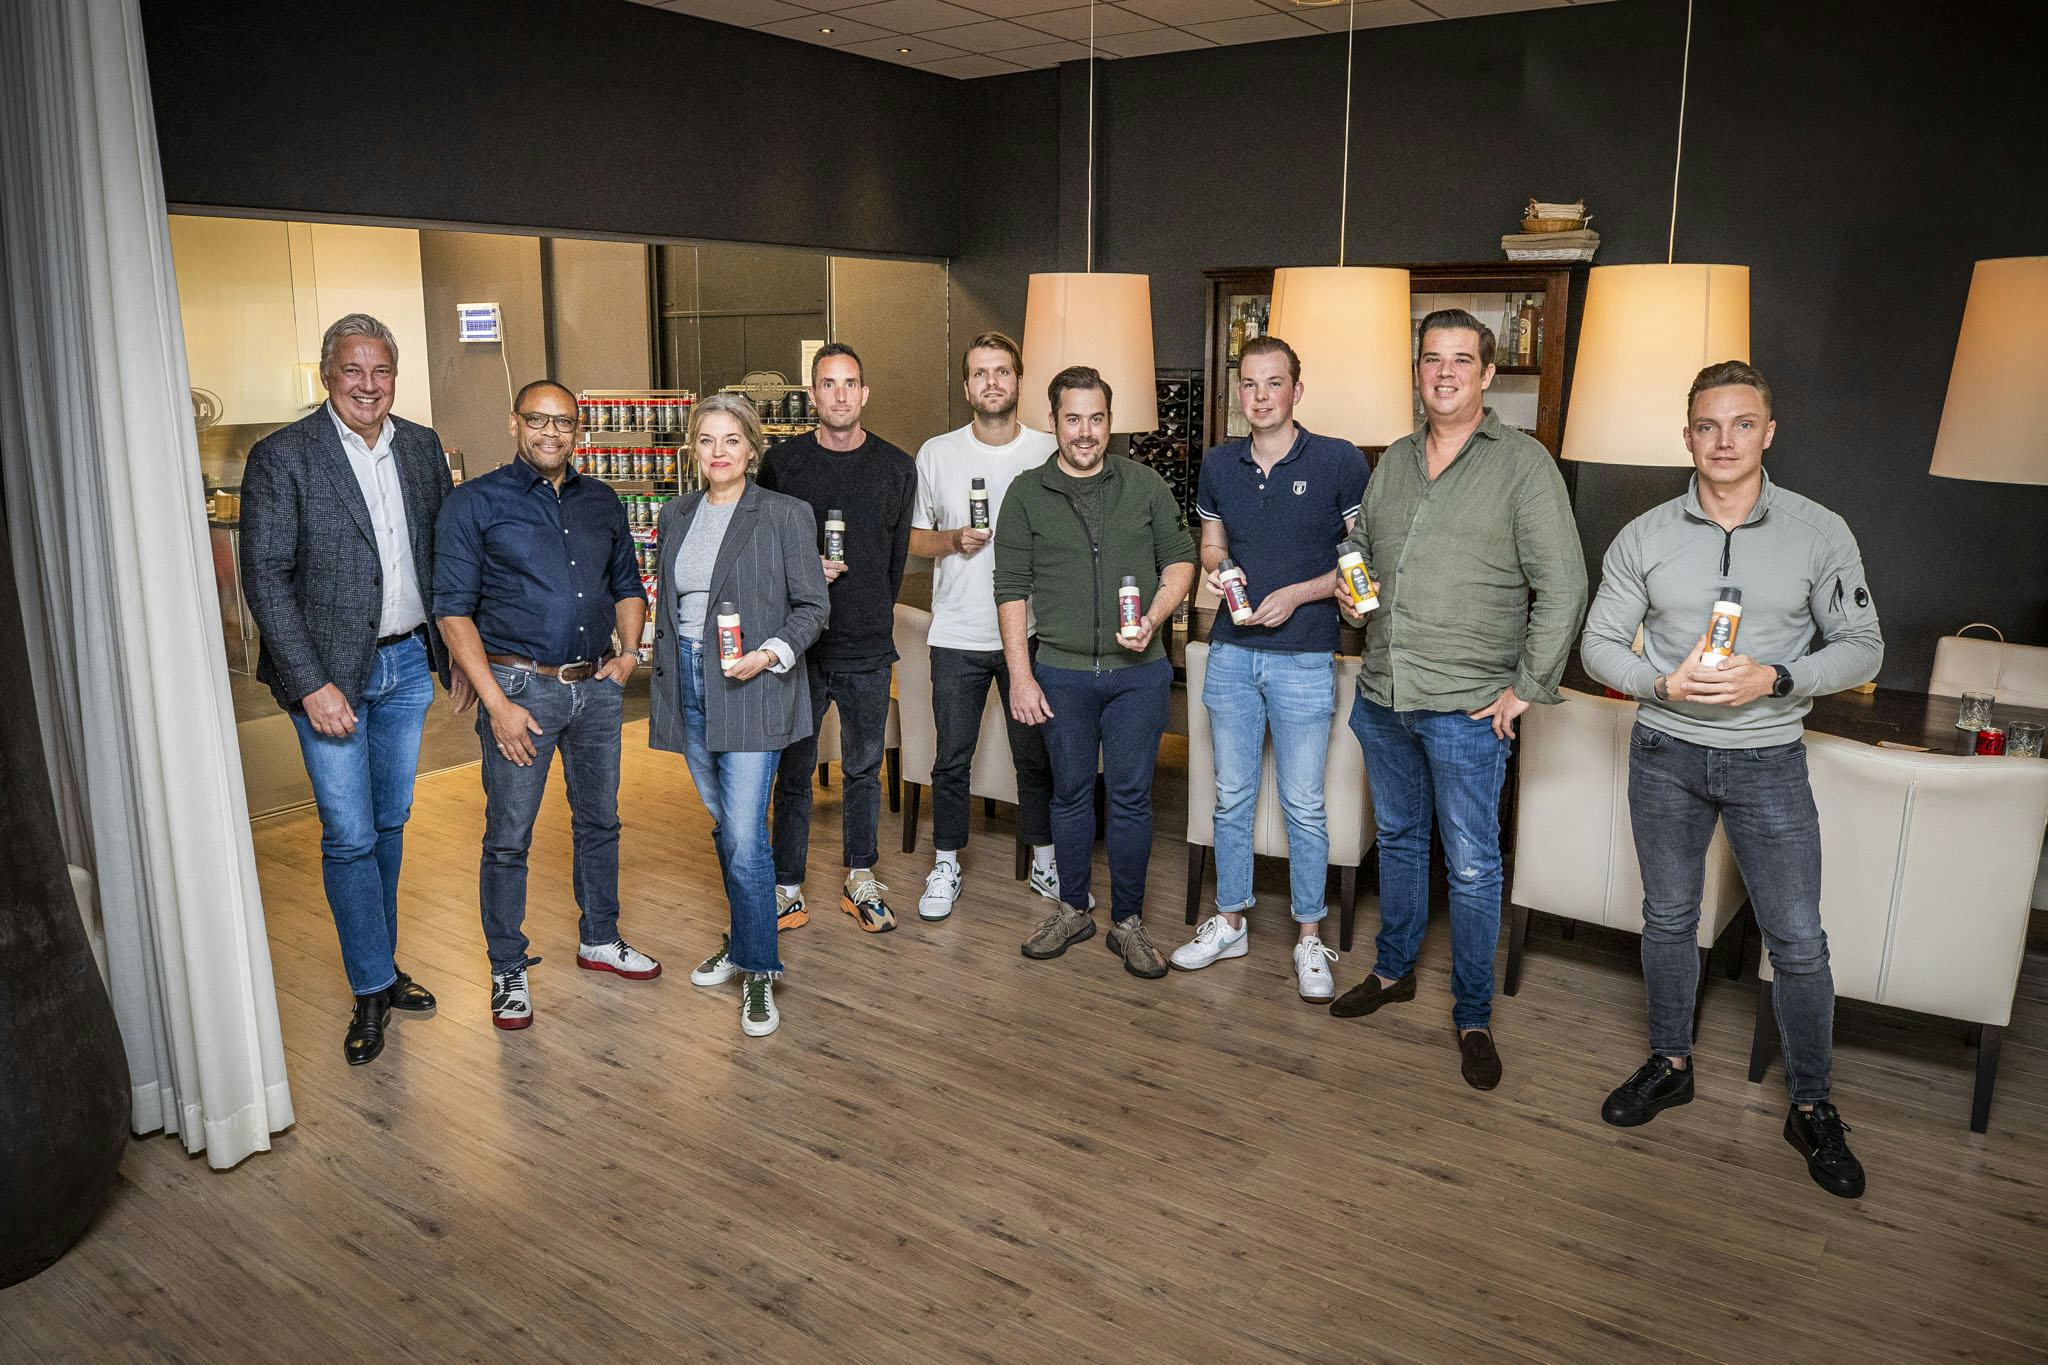 De lokale ondernemers waarmee sauzenfabrikant Hela Thissen uit Venlo nauw samenwerkte om vijf nieuwe en lokaal herkenbare sauzensmaken te ontwikkelen. 